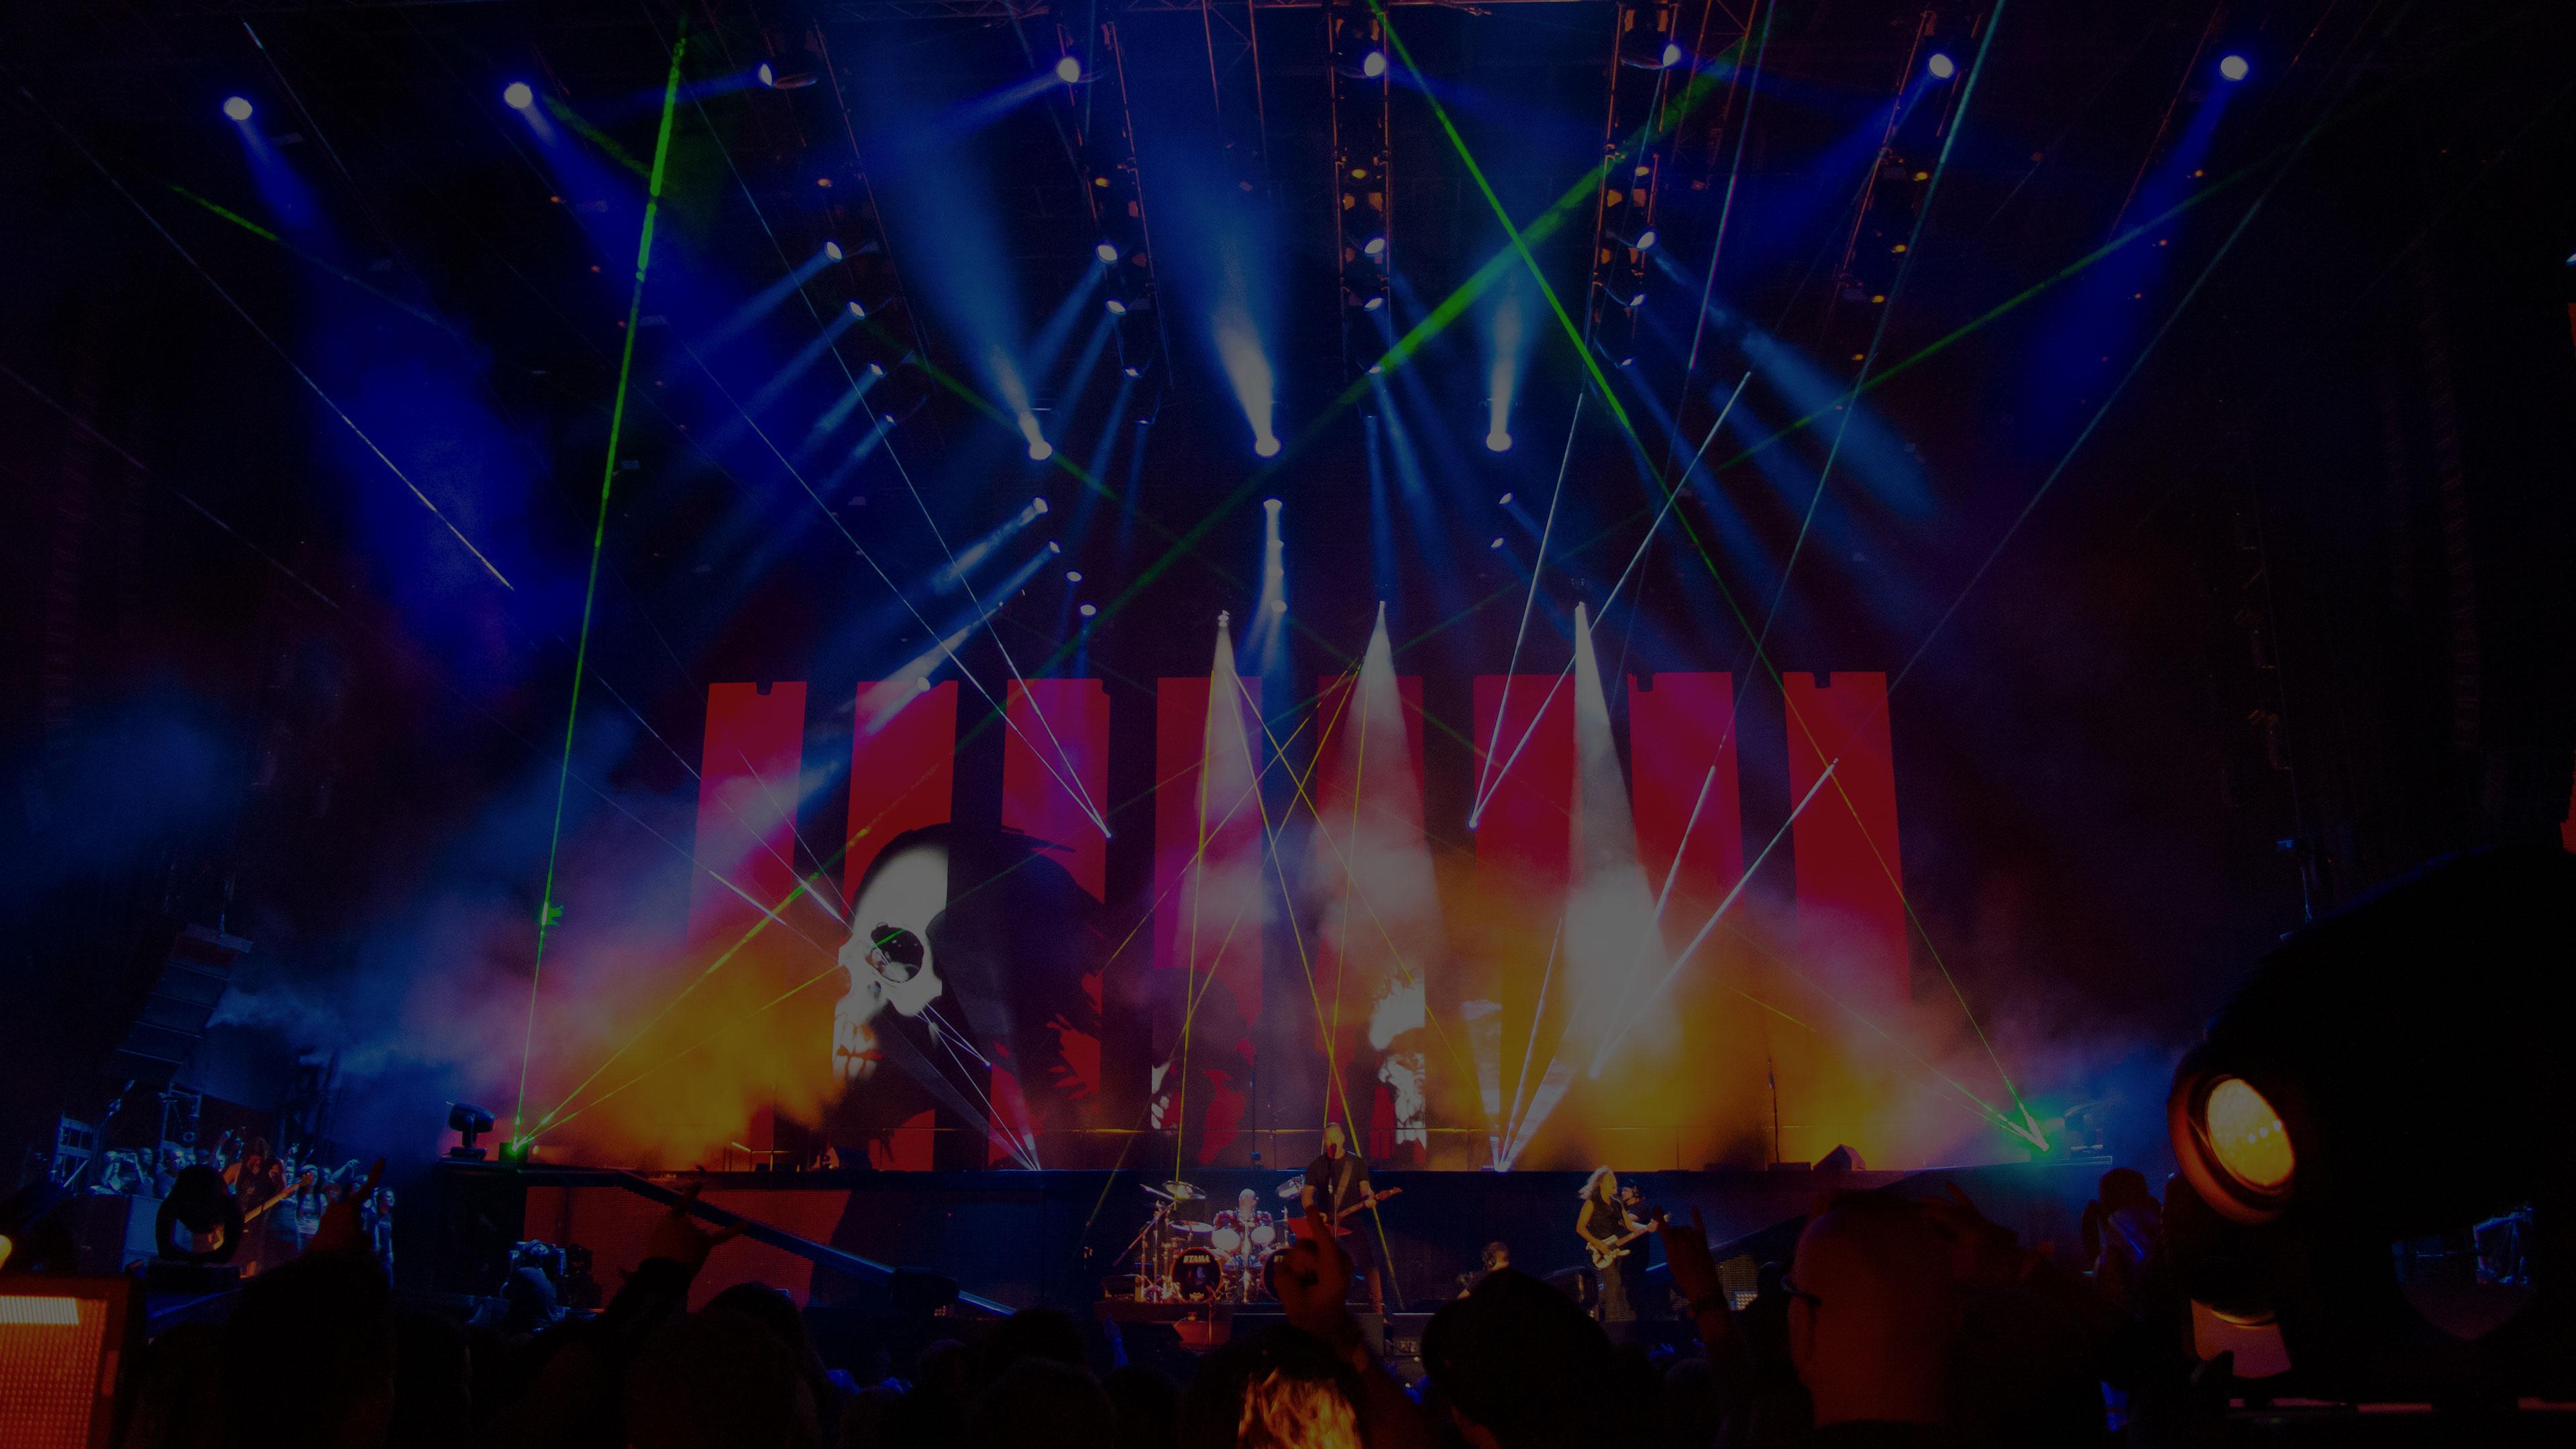 Metallica at Rock im Park at Zeppelinfeld in Nuremberg, Germany on June 6, 2014